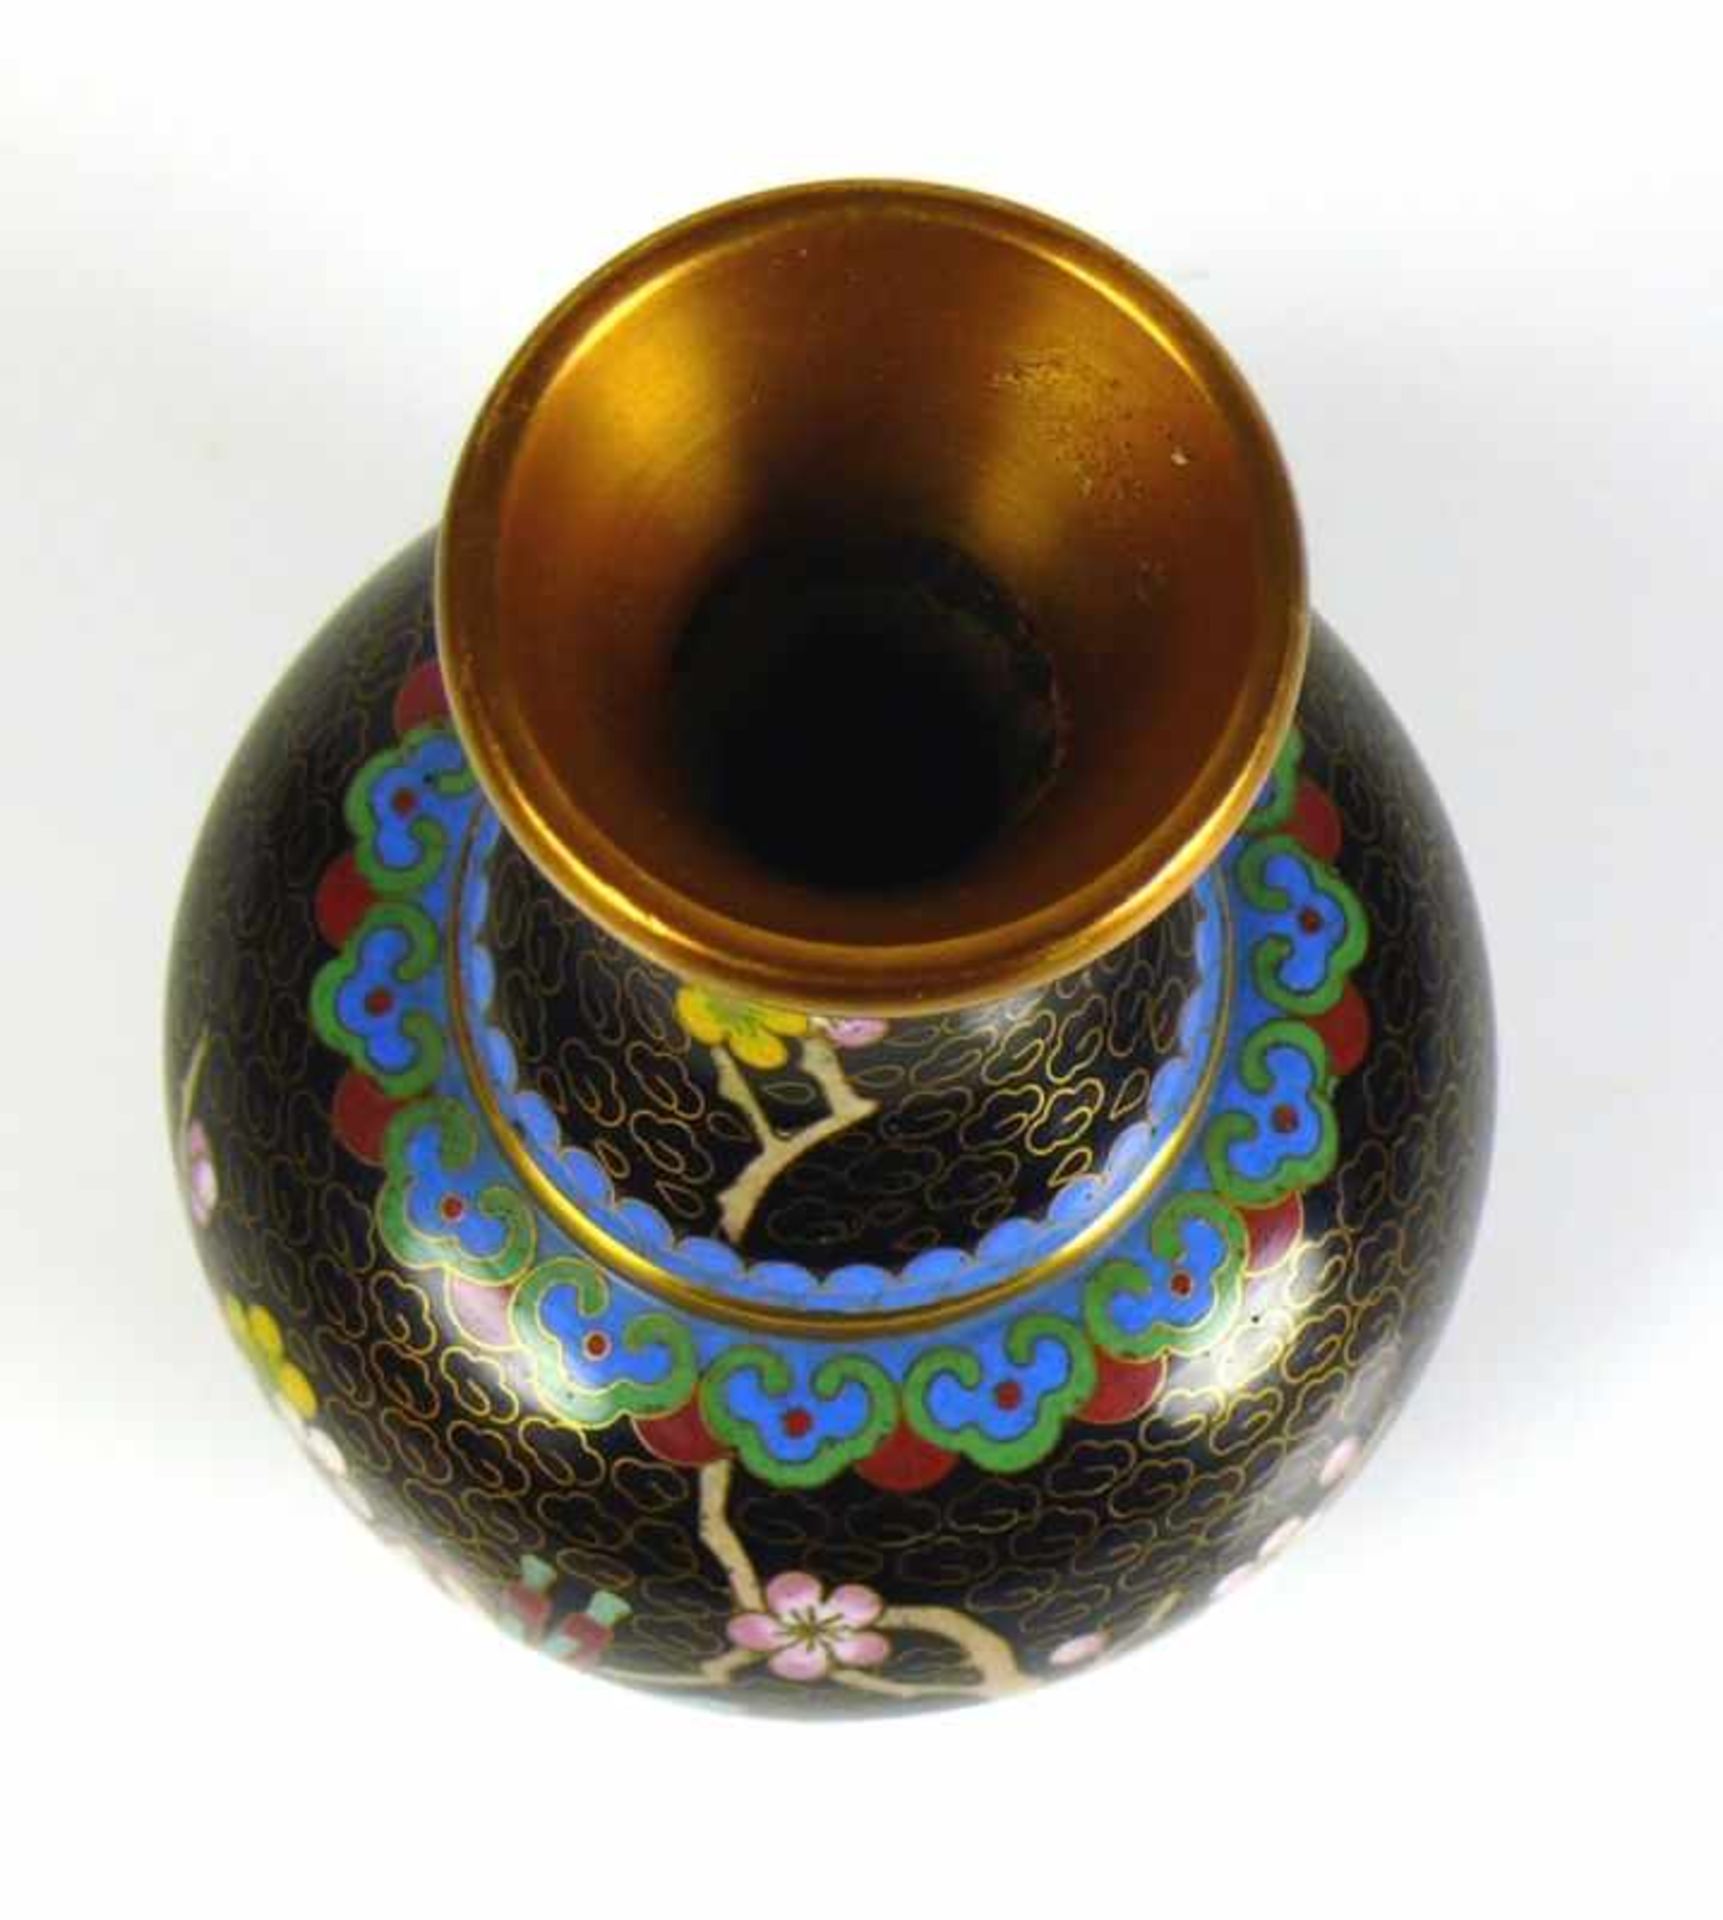 Cloisonné-Vase auf schwarzem Grund Floraldekor; gebauchter Korpus; taillierter Hals; H: 15 cm - Image 2 of 2